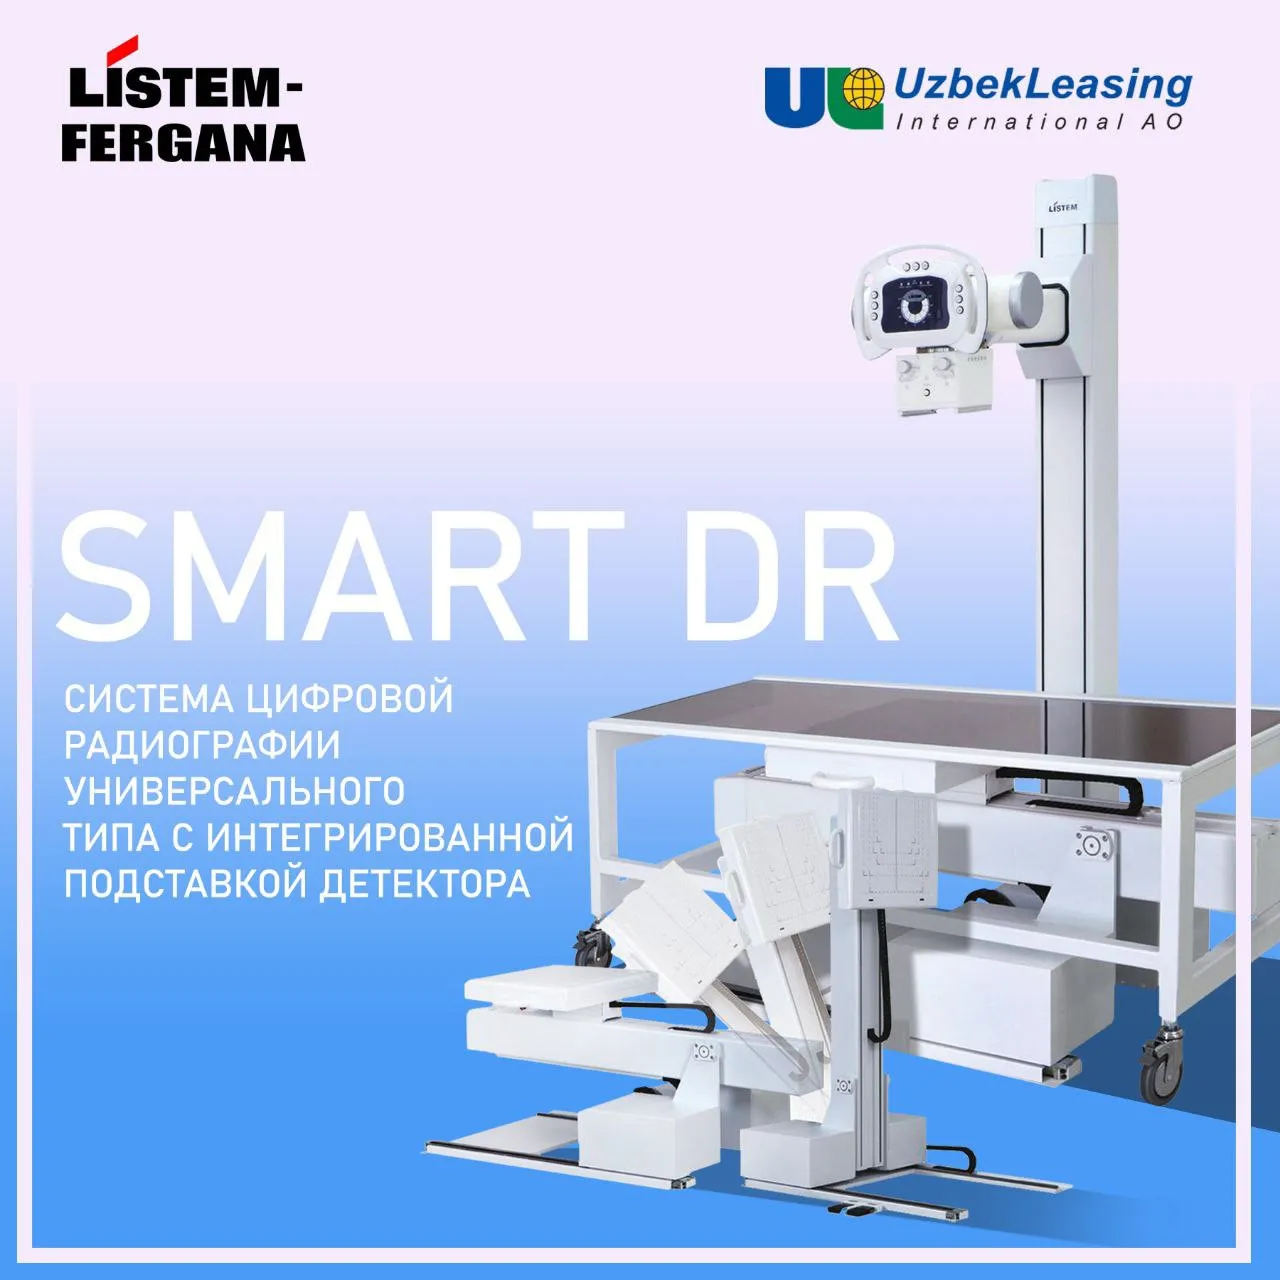 SMART-DR – Универсальная цифровая рентгеновская система#1